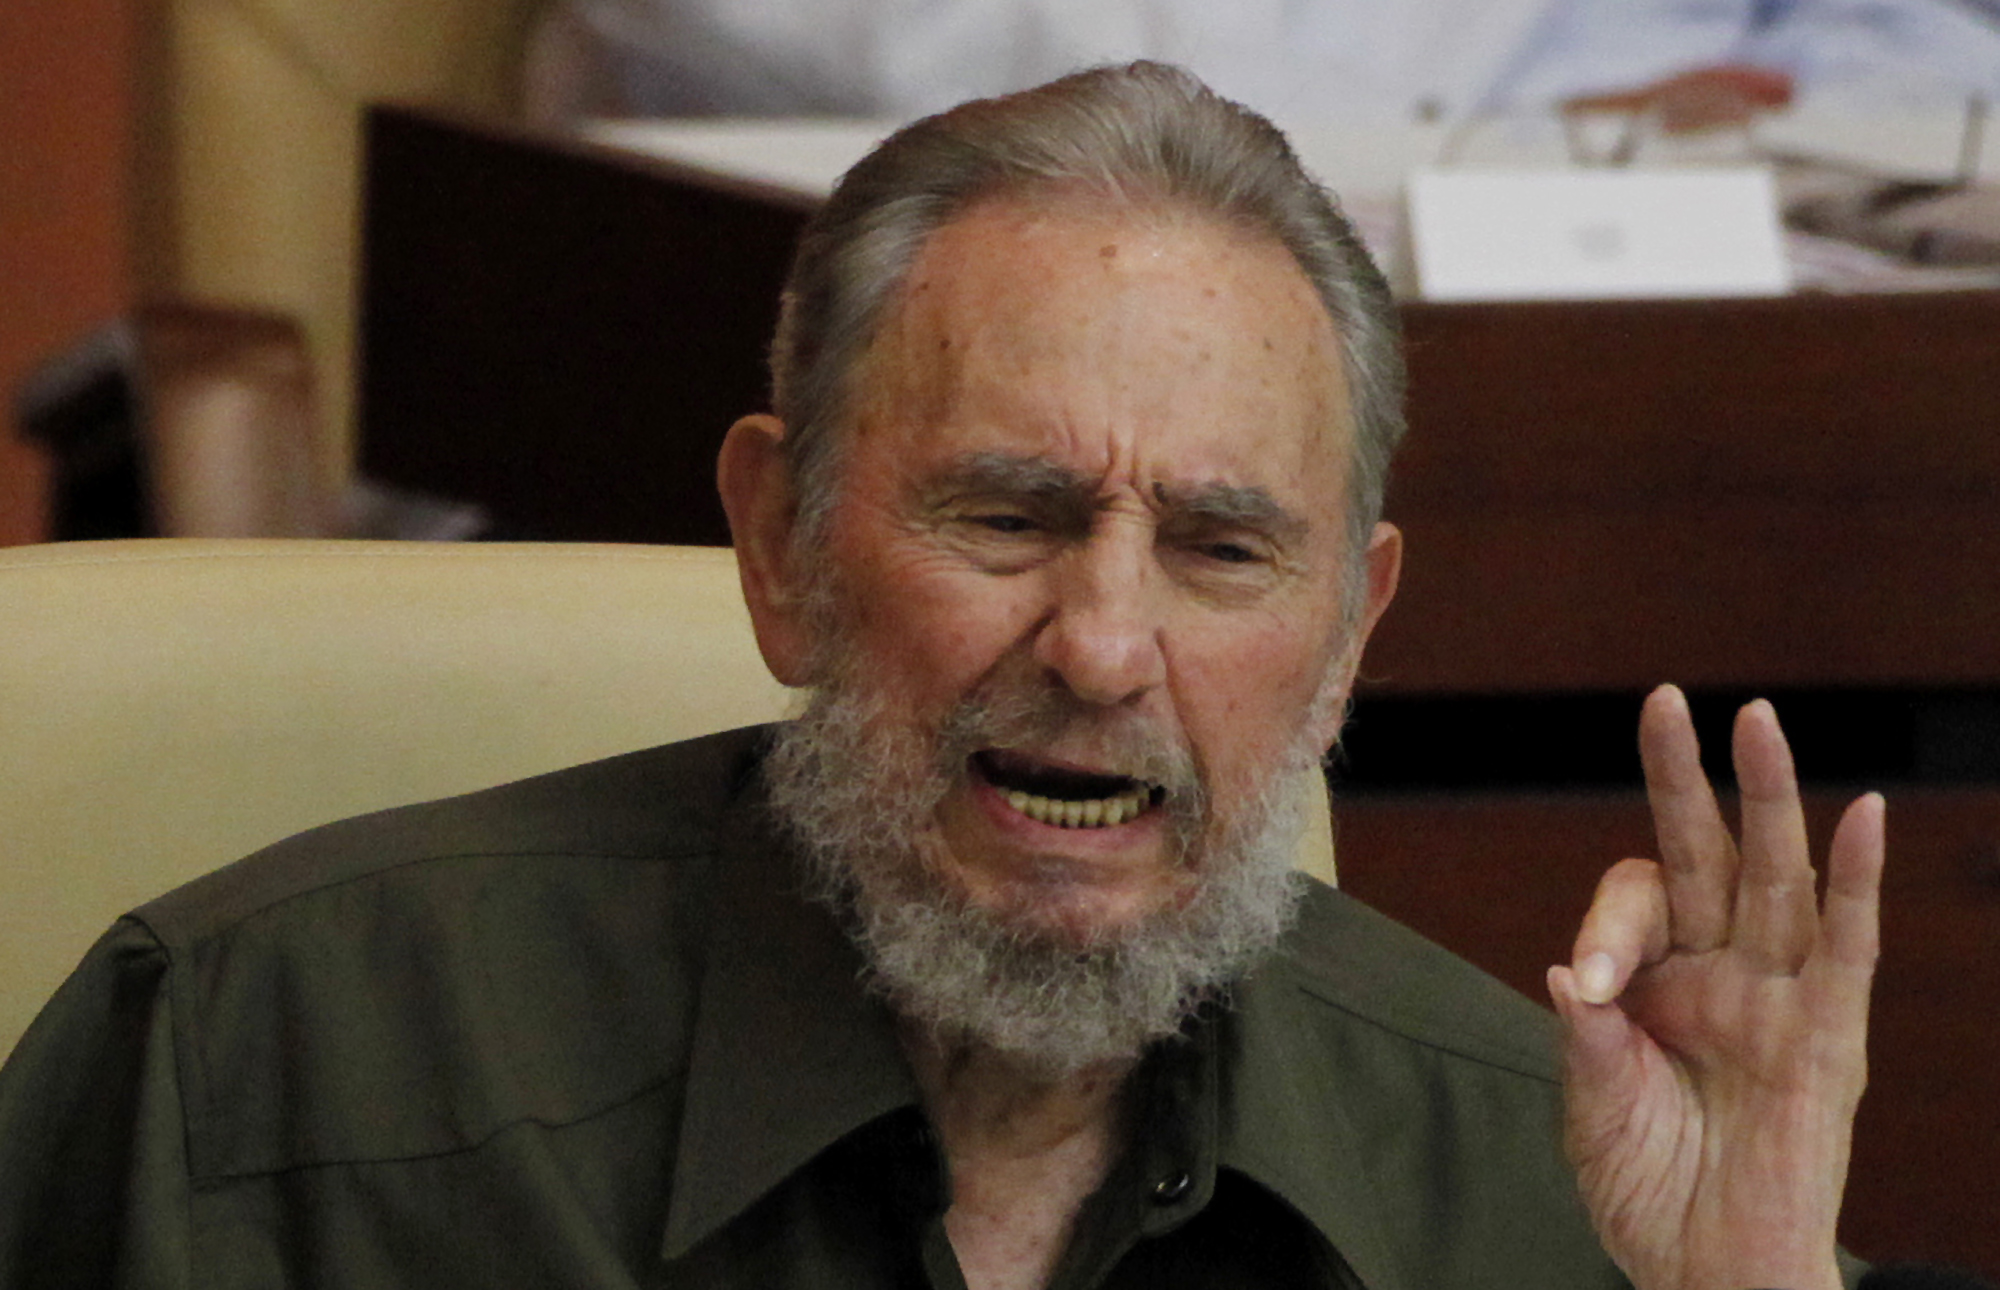 Fidel Castro, Mahmoud Ahmadinejad, Konspirationsteorier, Judarna, Israel, Antisemitism, Kuba, Castro, hat, Iran, Judar